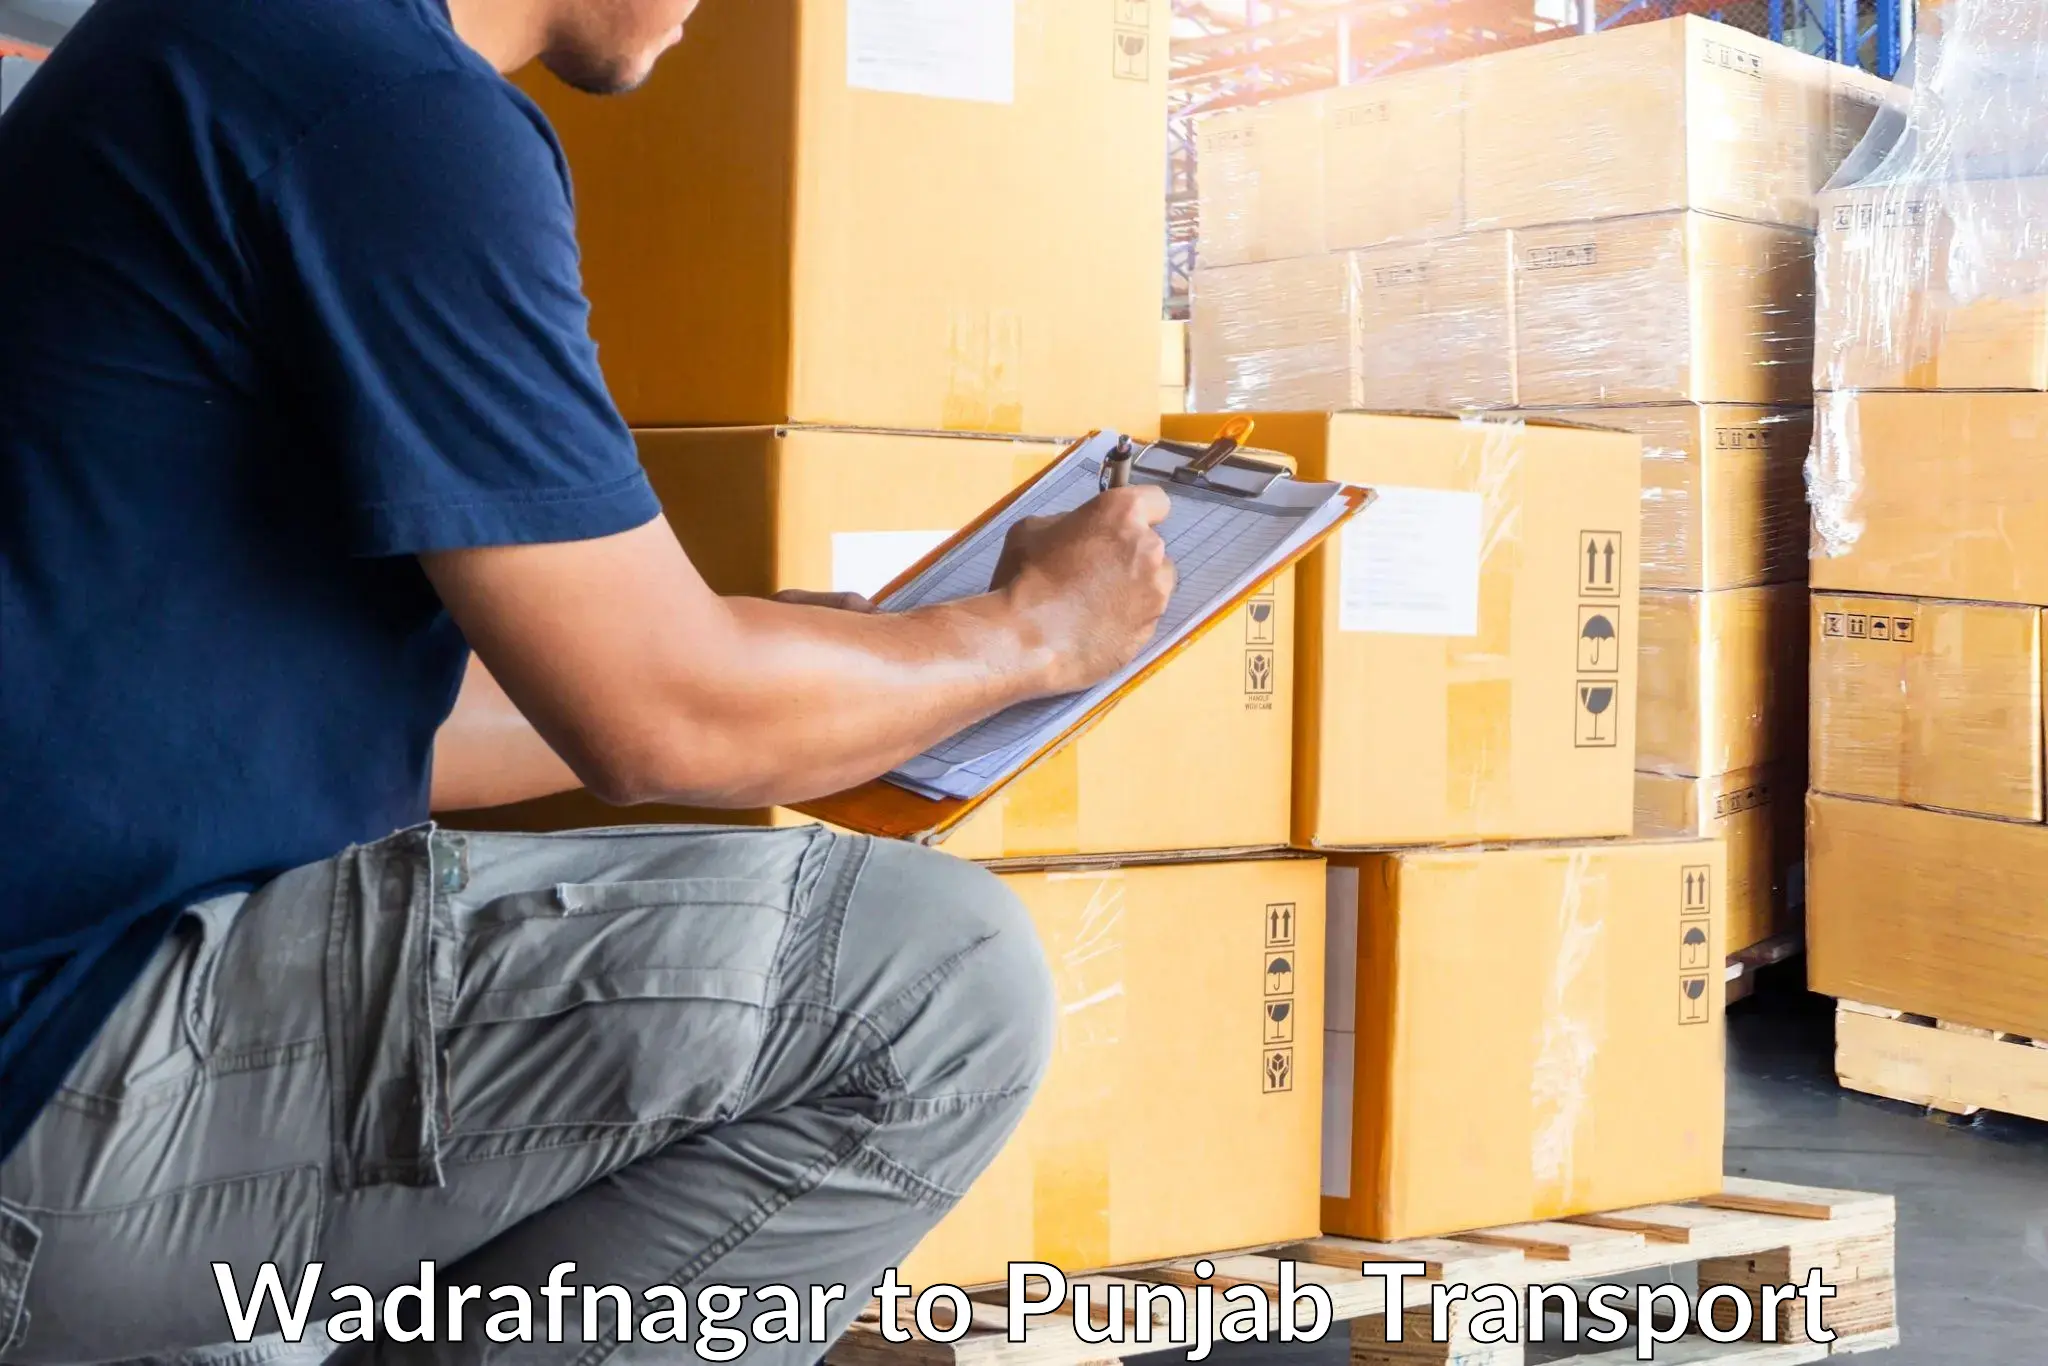 Goods delivery service Wadrafnagar to Gurdaspur